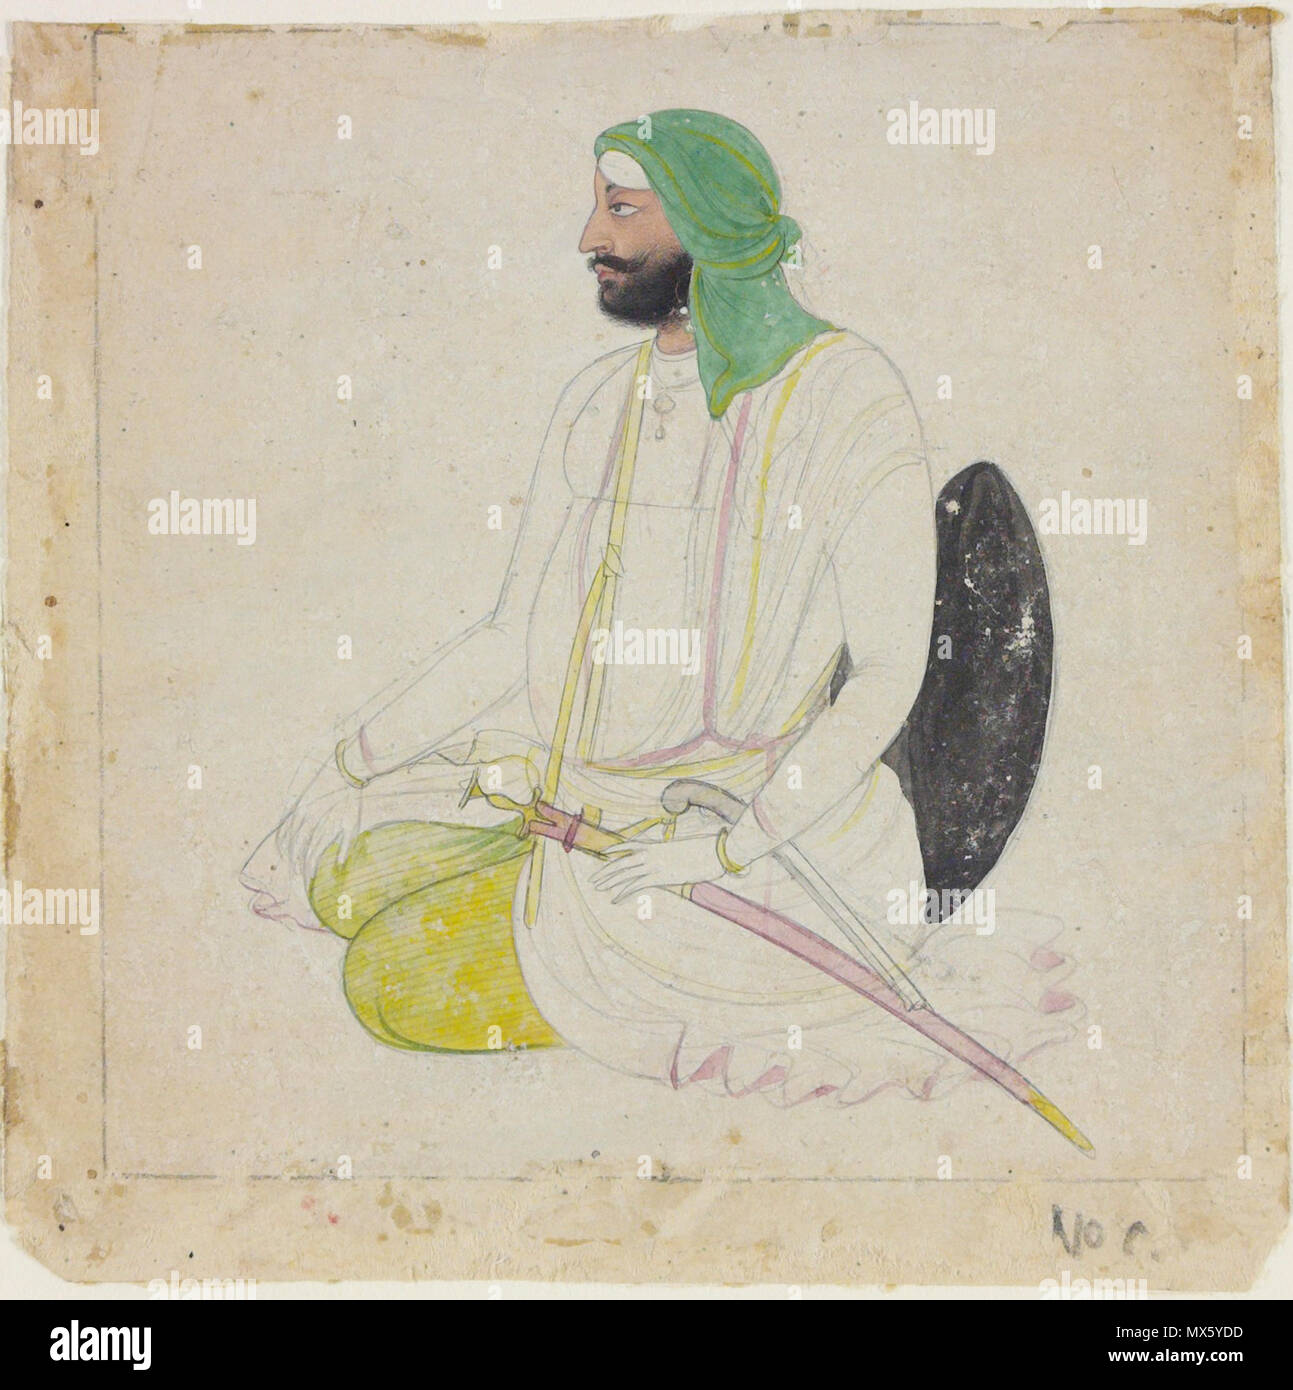 . Inglés: Este dibujo realizado en tinta sobre papel está ligeramente pintados del color de la carrocería y las fechas a c. 1835-45. Ella representa un sij sardar, un título originalmente significa 'Cacique' o 'Cacique' en persa, pero que llegó a ser utilizado de forma rutinaria para los hombres Sikh de cierto rango. El retrato fue probablemente hecho en Lahore o Amritsar, las principales ciudades del reino Sikh establecida por el Maharajá Ranjit Singh en 1801 y que sobrevivió hasta el Panjab fue anexada al Imperio Británico en 1849. El Panjab (literalmente "cinco ríos") fue posteriormente dividido en dos tras la partición del subcontinente indio en 1947 Foto de stock